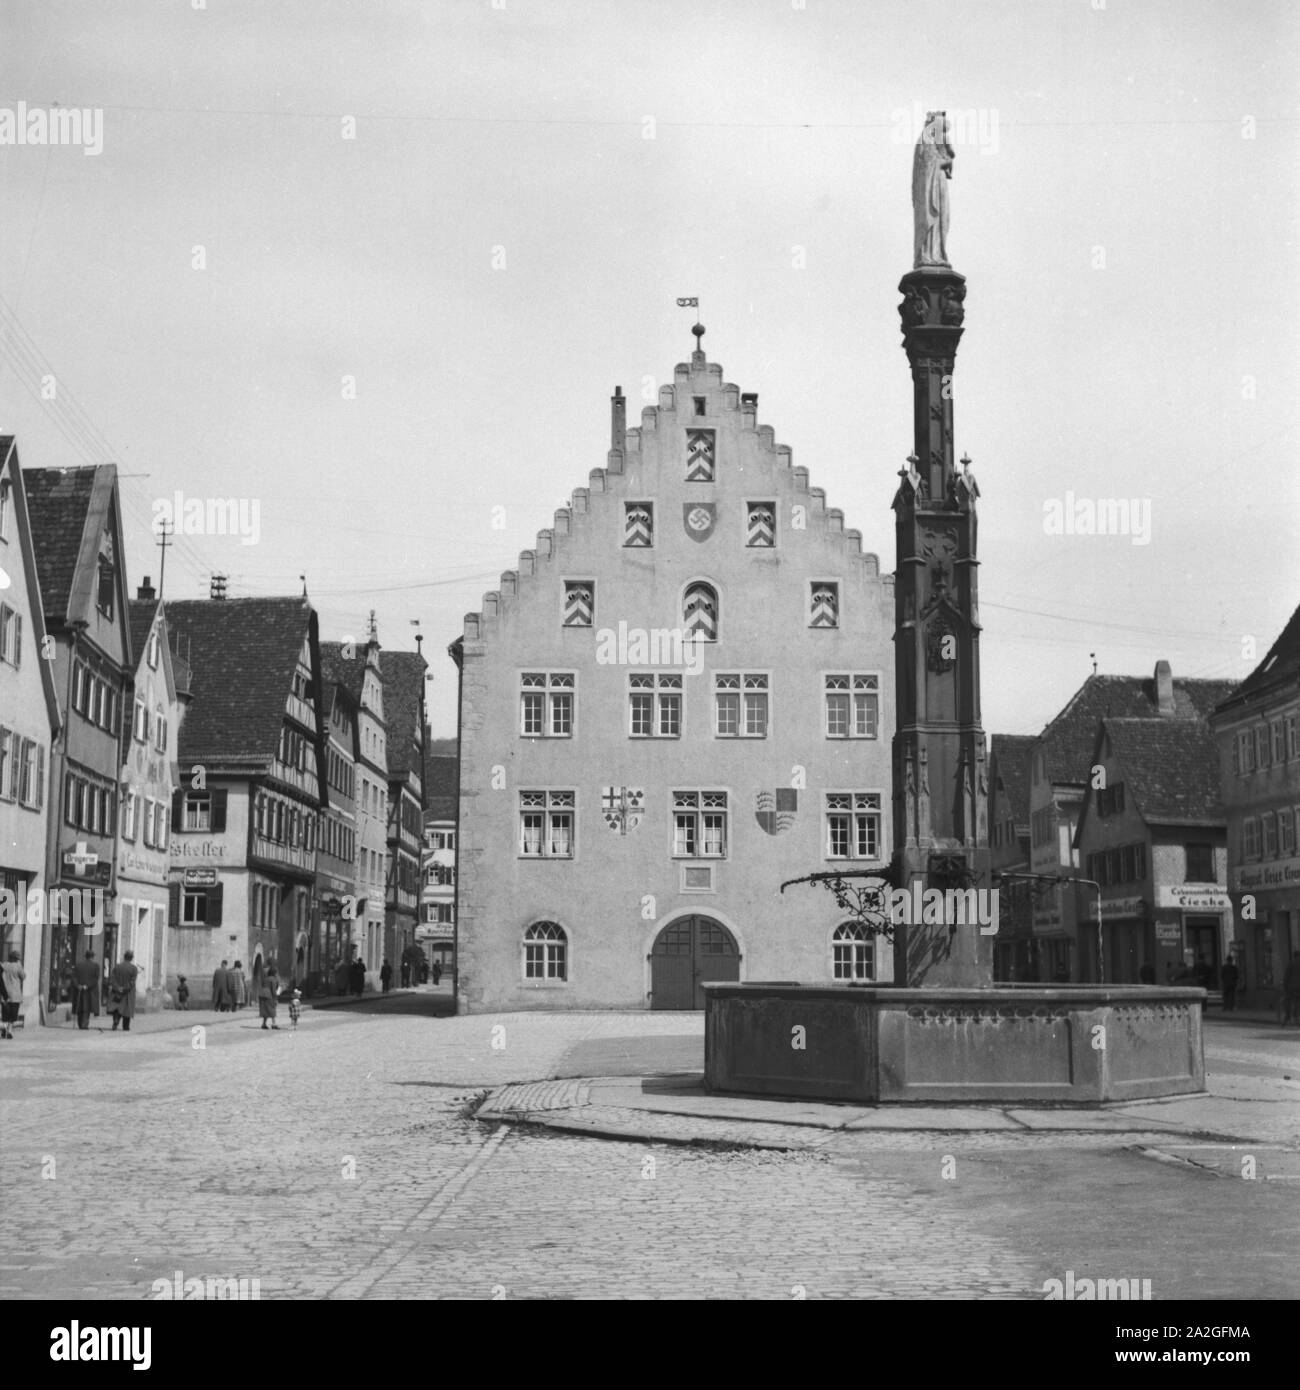 Rathaus mit Brunnen de Bad Mergentheim, Deutschland 1930 er Jahre. Fontaine et l'hôtel de ville à Bad Mergentheim, Allemagne 1930. Banque D'Images